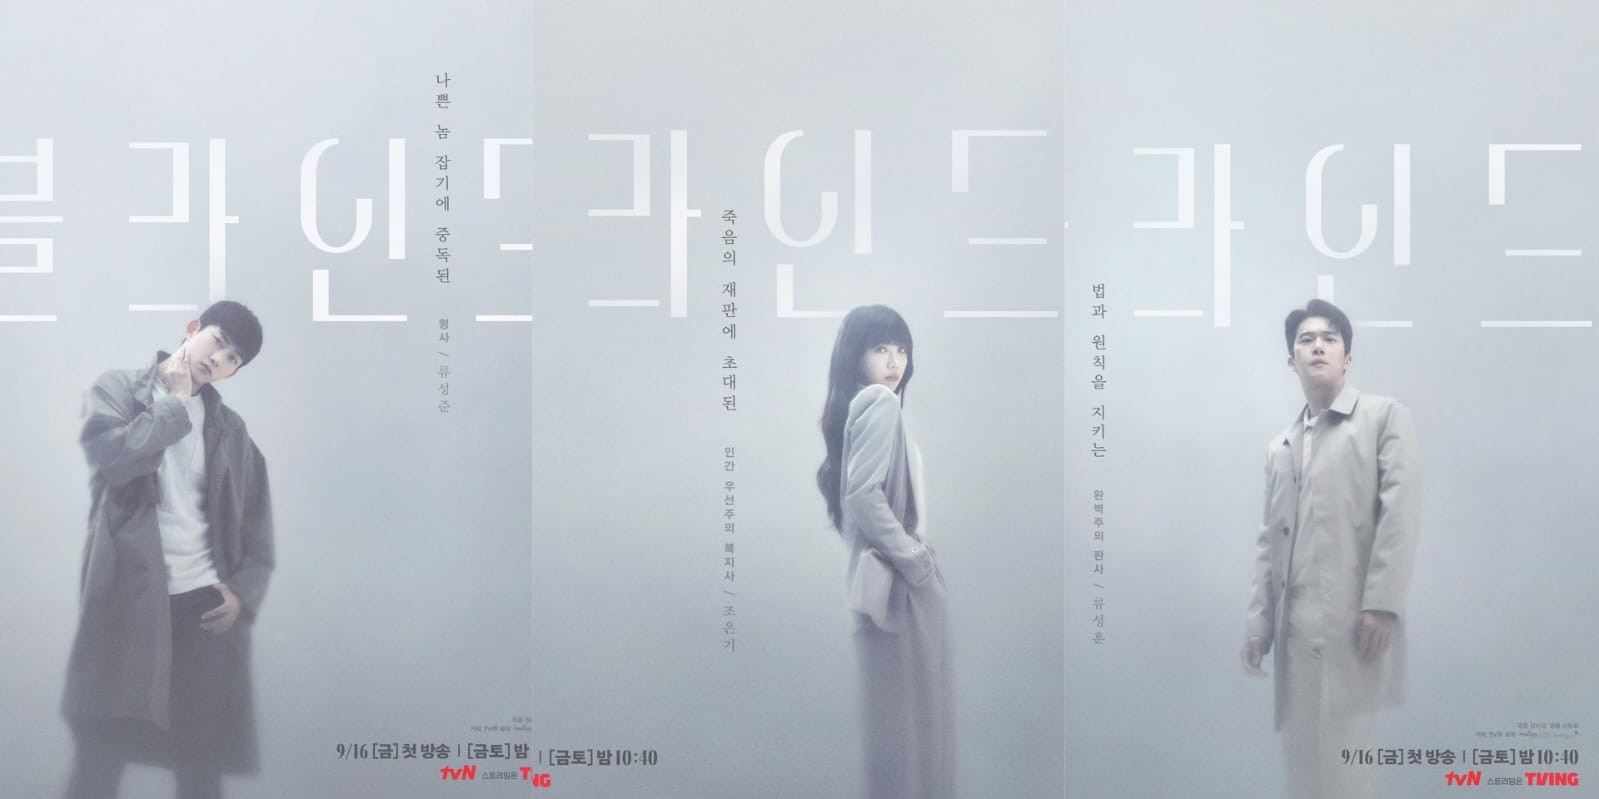 Tvn Resmi Rilis Teaser "Blind", Drama Thriller Terbaru